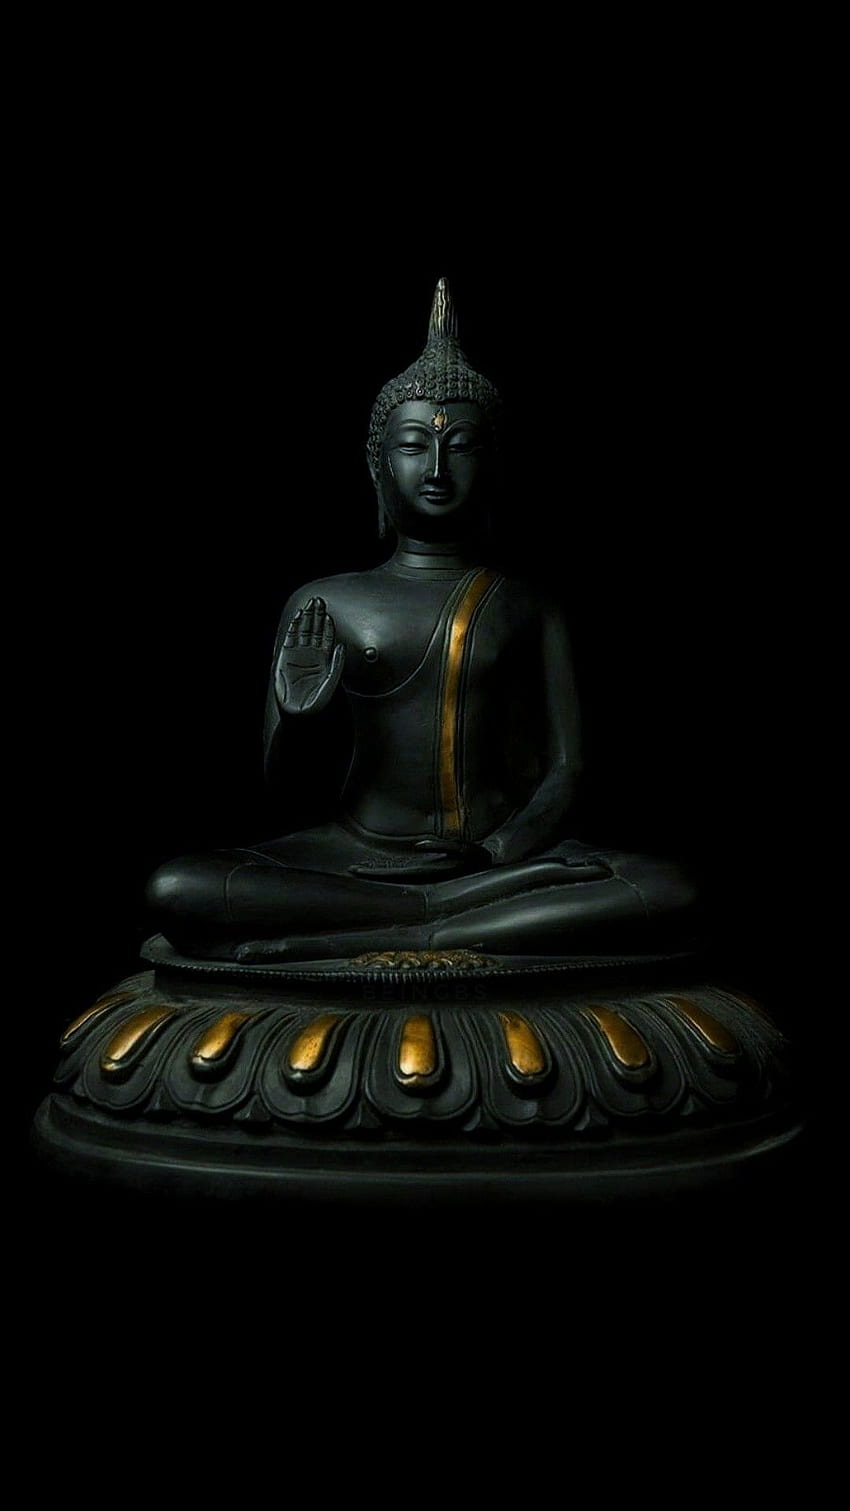  Buddhismus Hintergrundbild 850x1511. Buddha PC -, Buddha PC Background on Bat, Minimalist Buddhist HD wallpaper